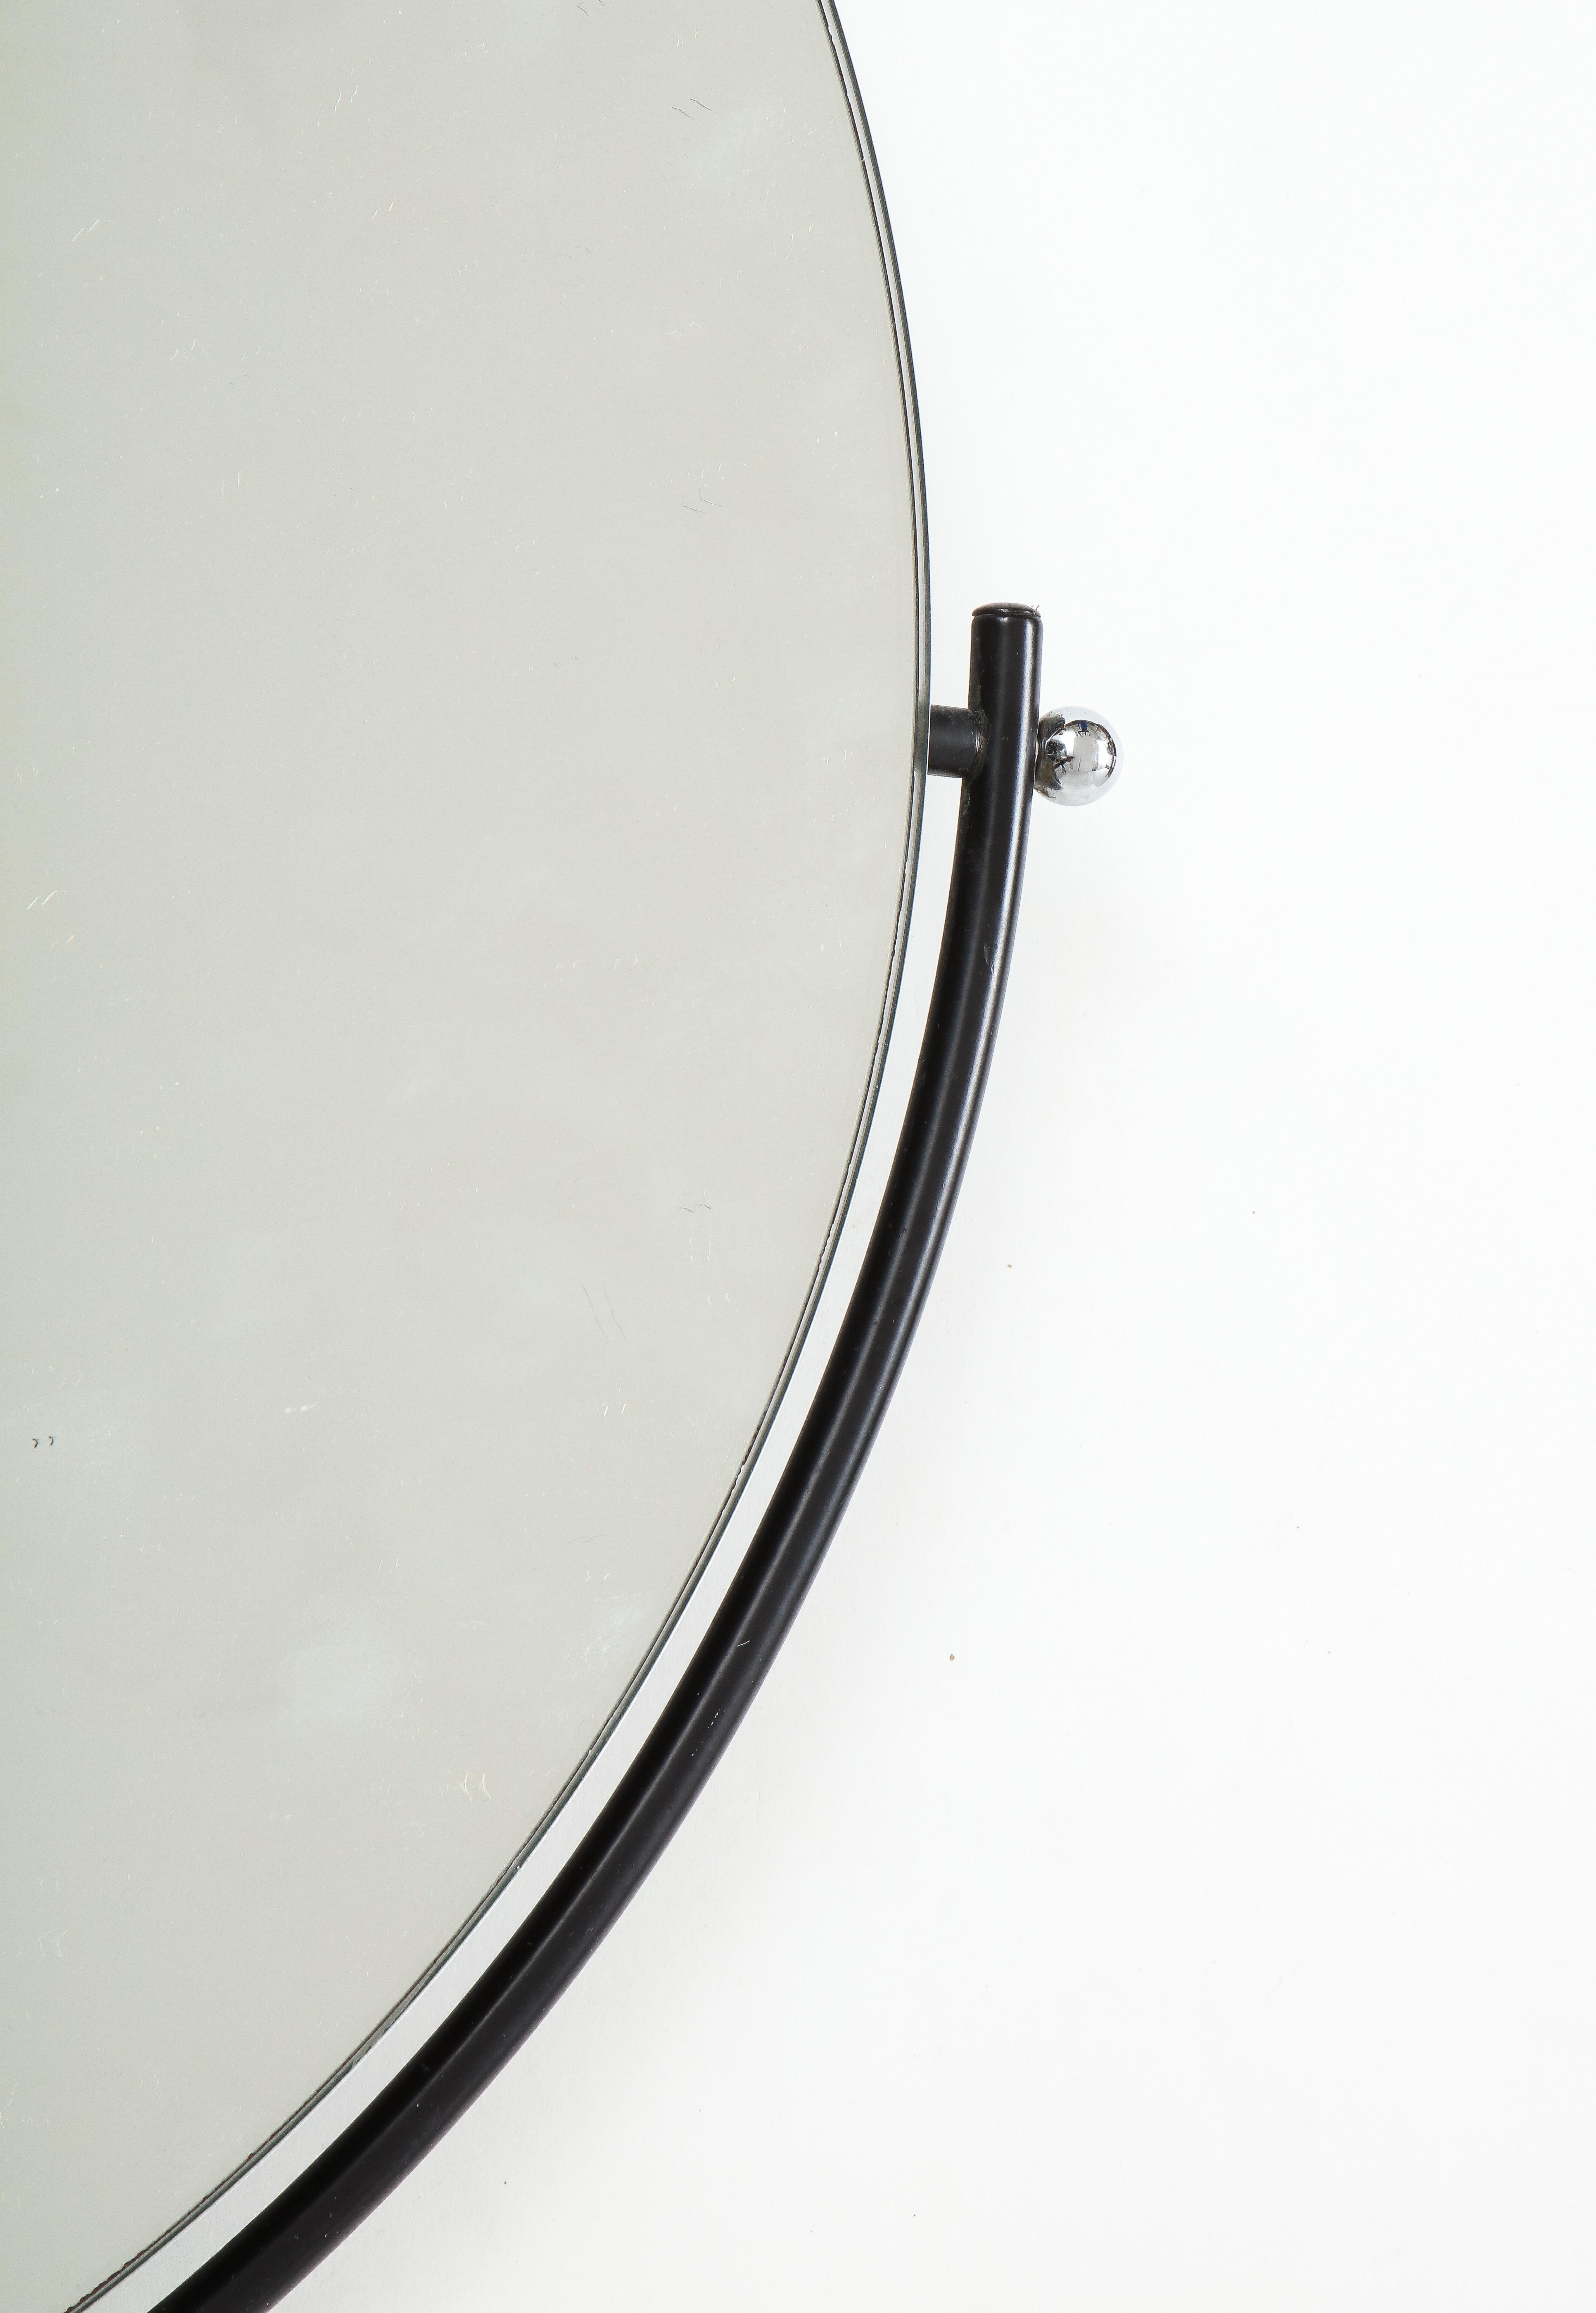 Anodized Modernist 'Orbit' Wall Mirror by Rodney Kinsman for Bieffeplast